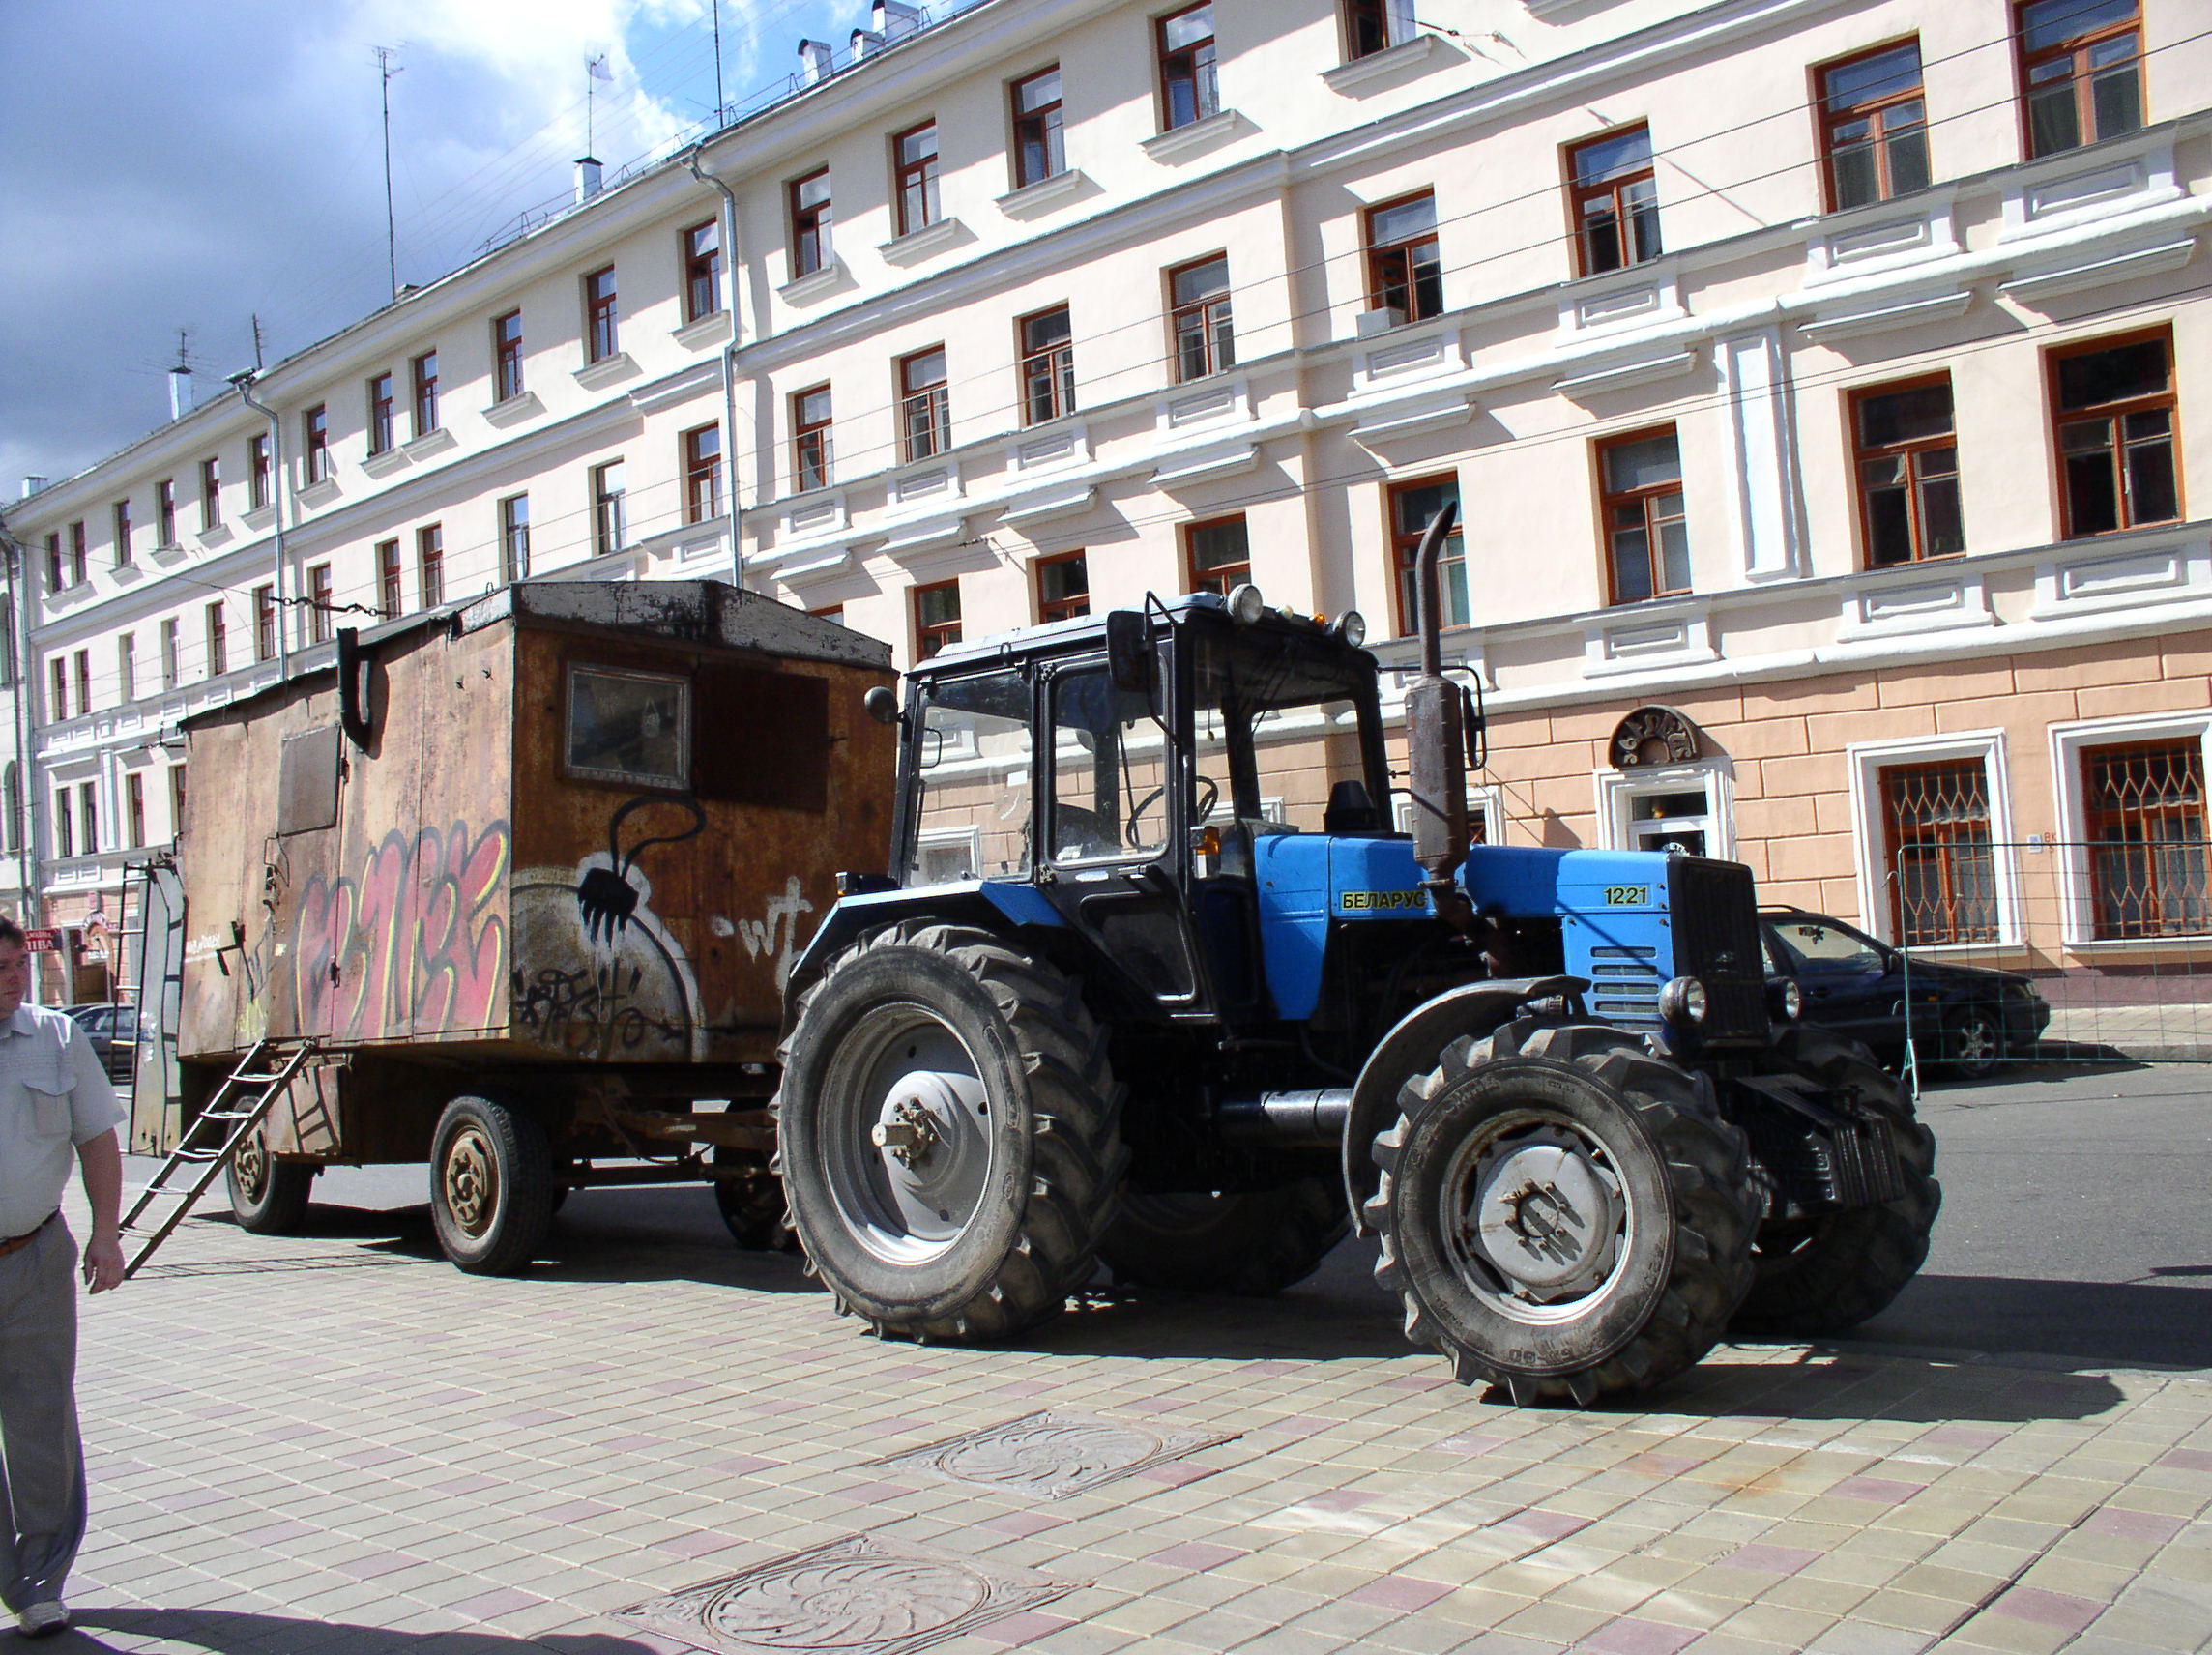 File:Tractor Belarus-1221.jpg - Wikimedia Commons